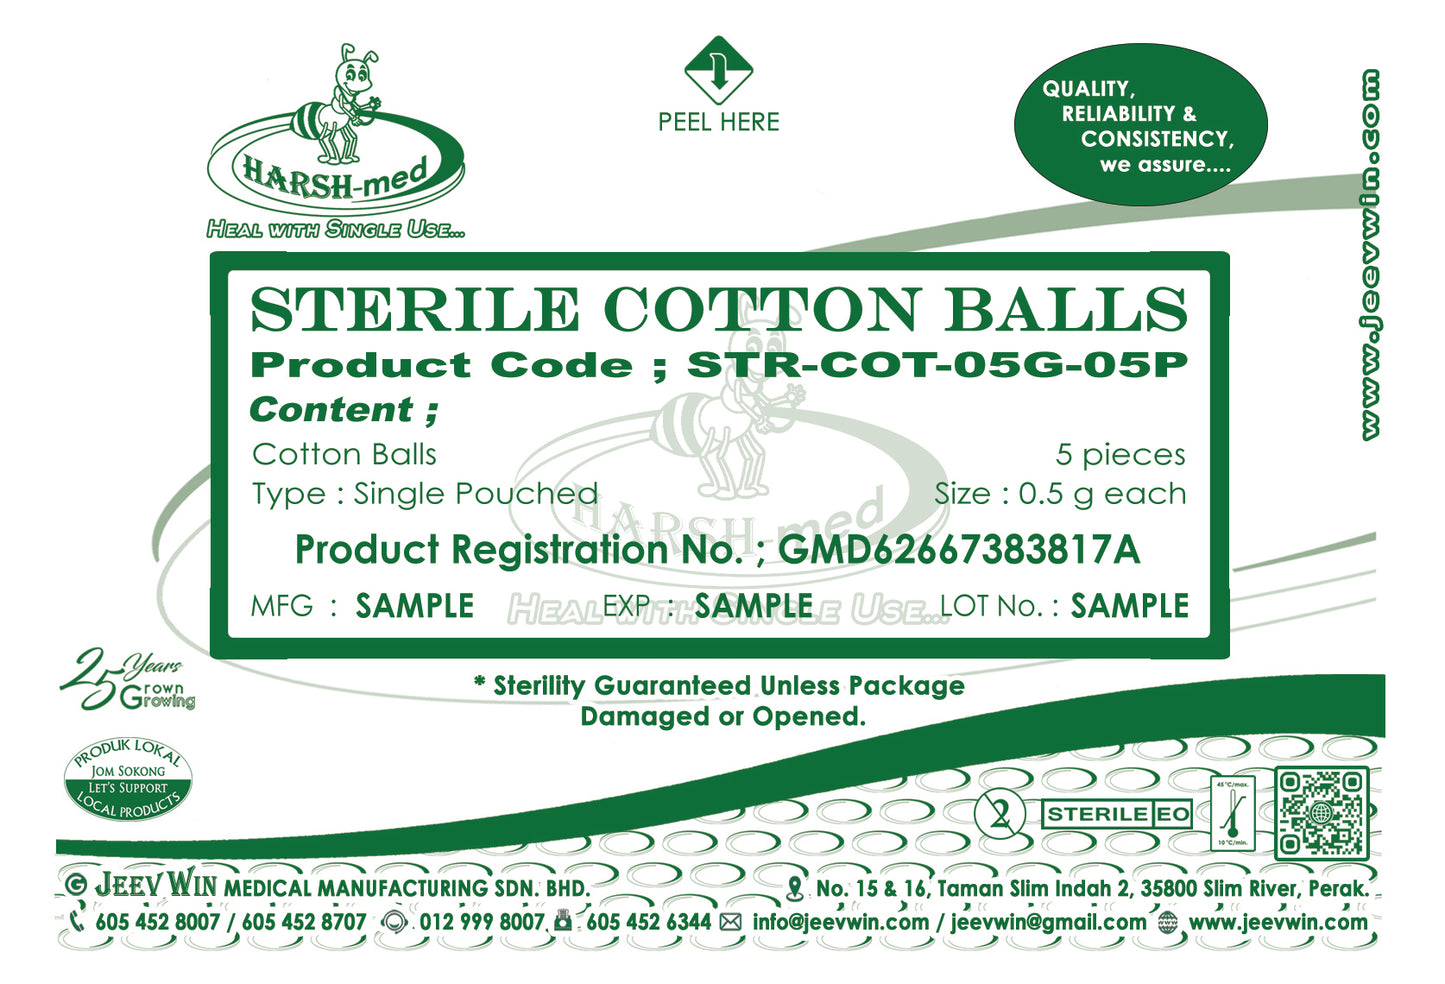 STERILE COTTON BALLS - 0.5g each (5 pcs)